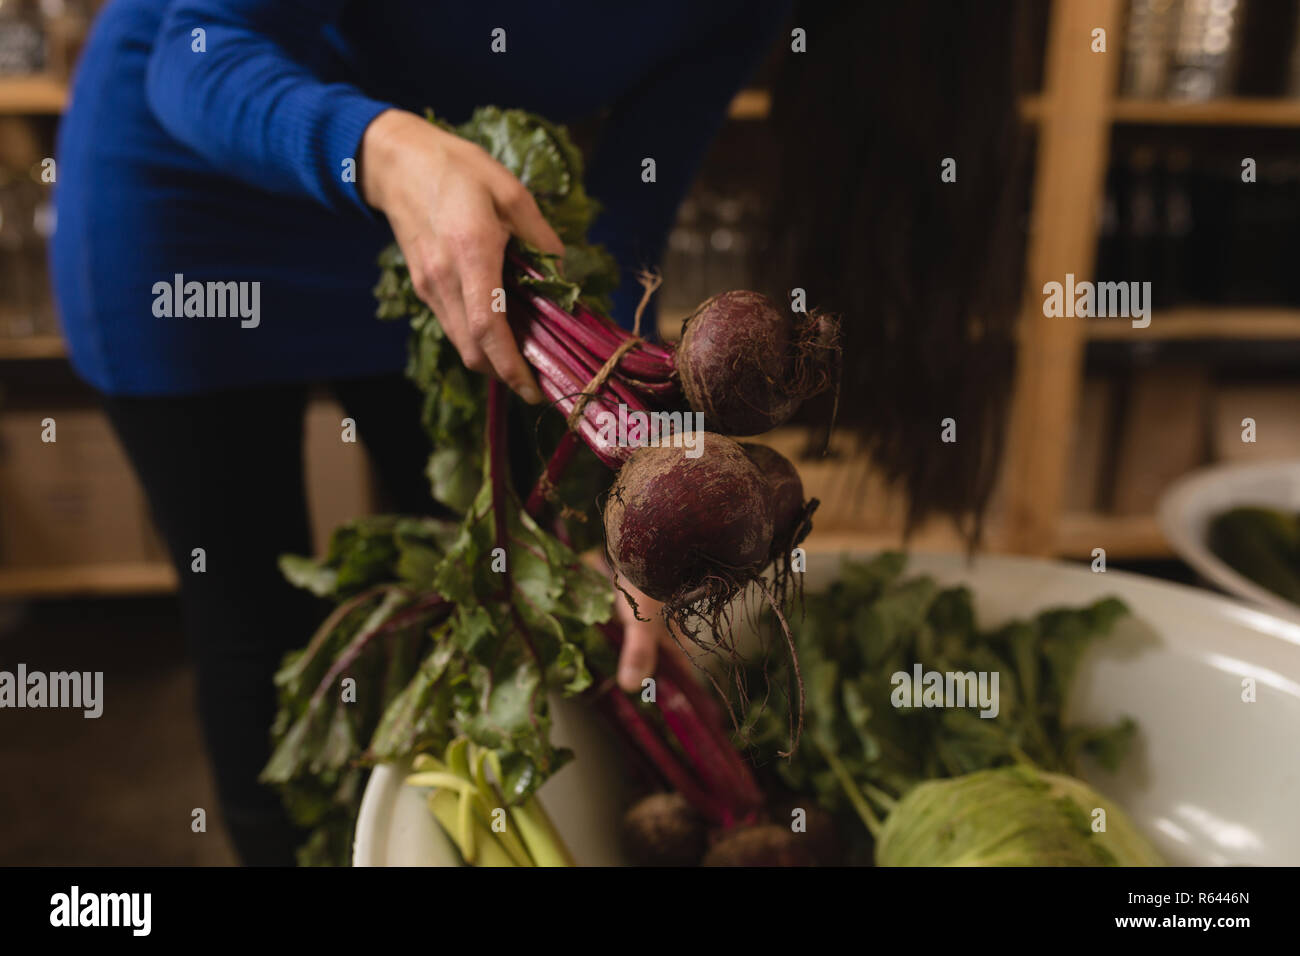 Donna vegetale di prelievo dal cestello nel supermercato Foto Stock